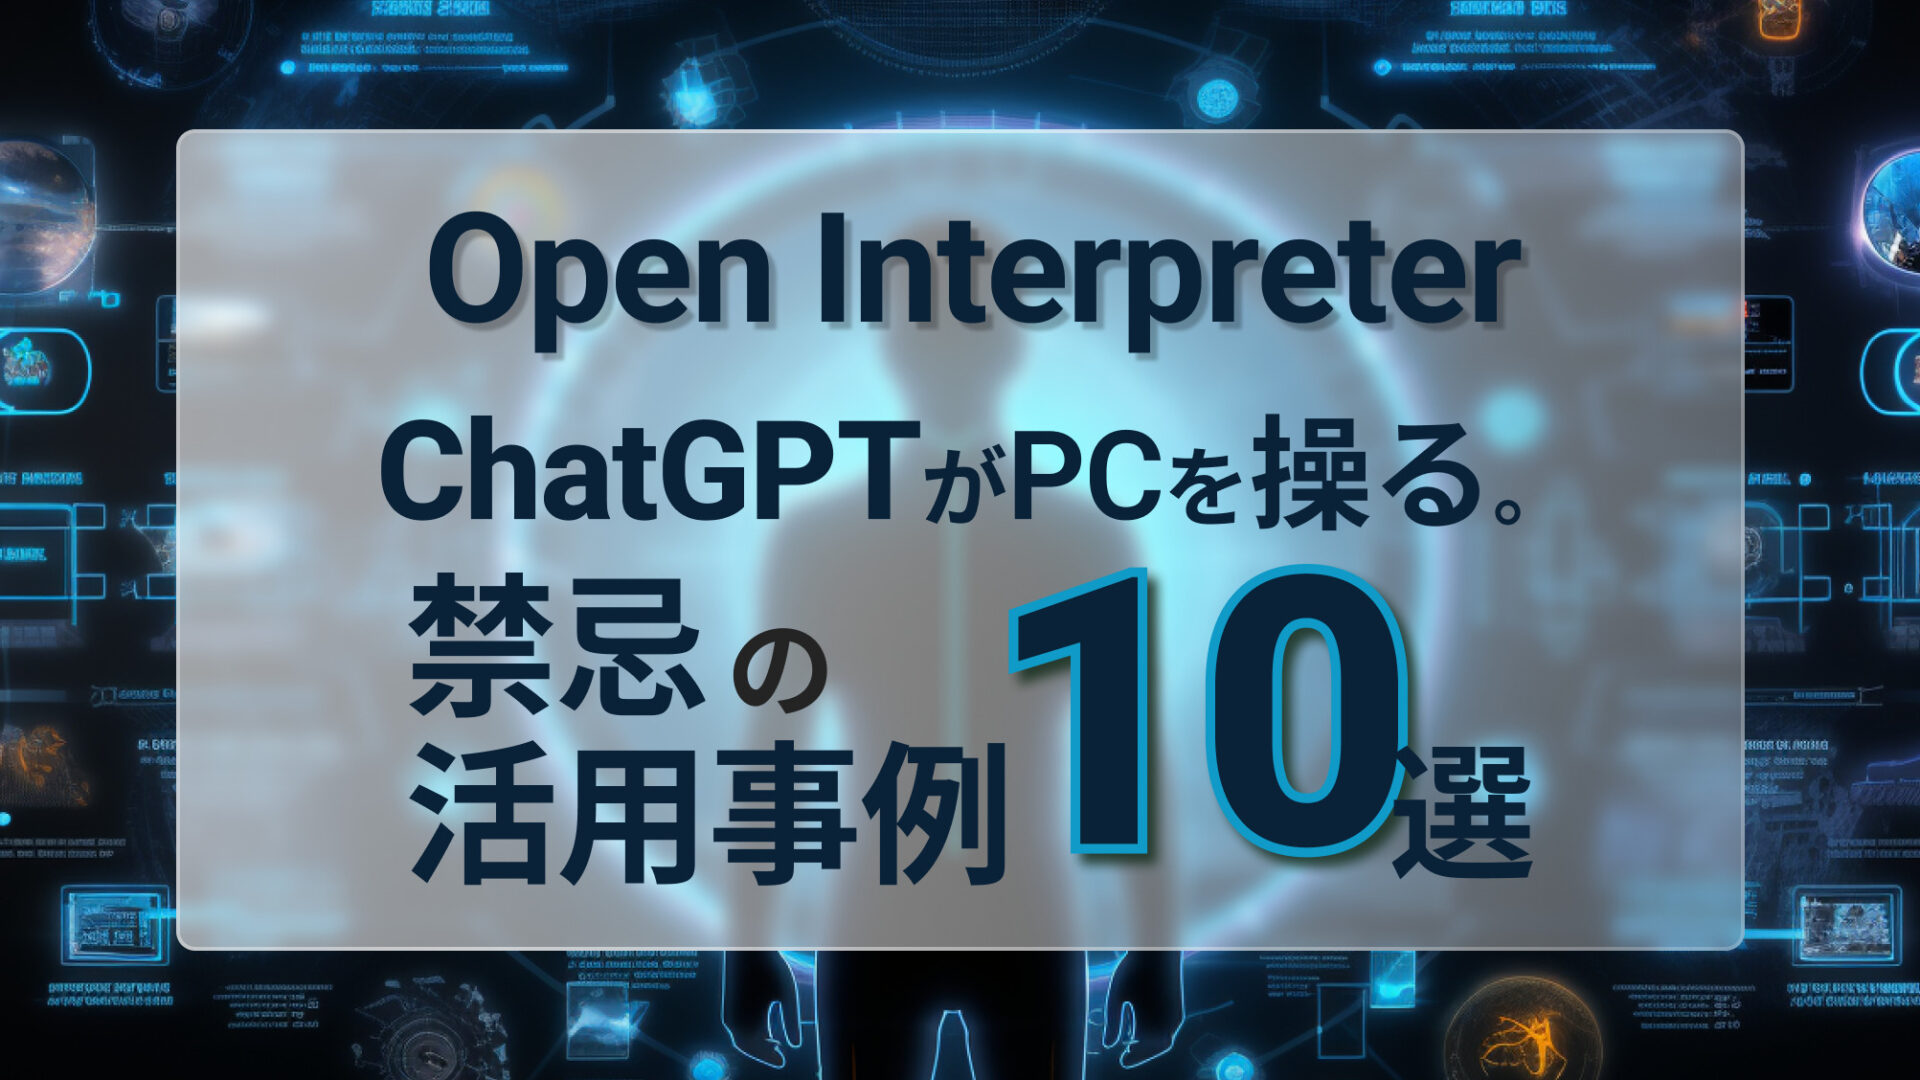 Open Interpreter ChatGPT 活用事例